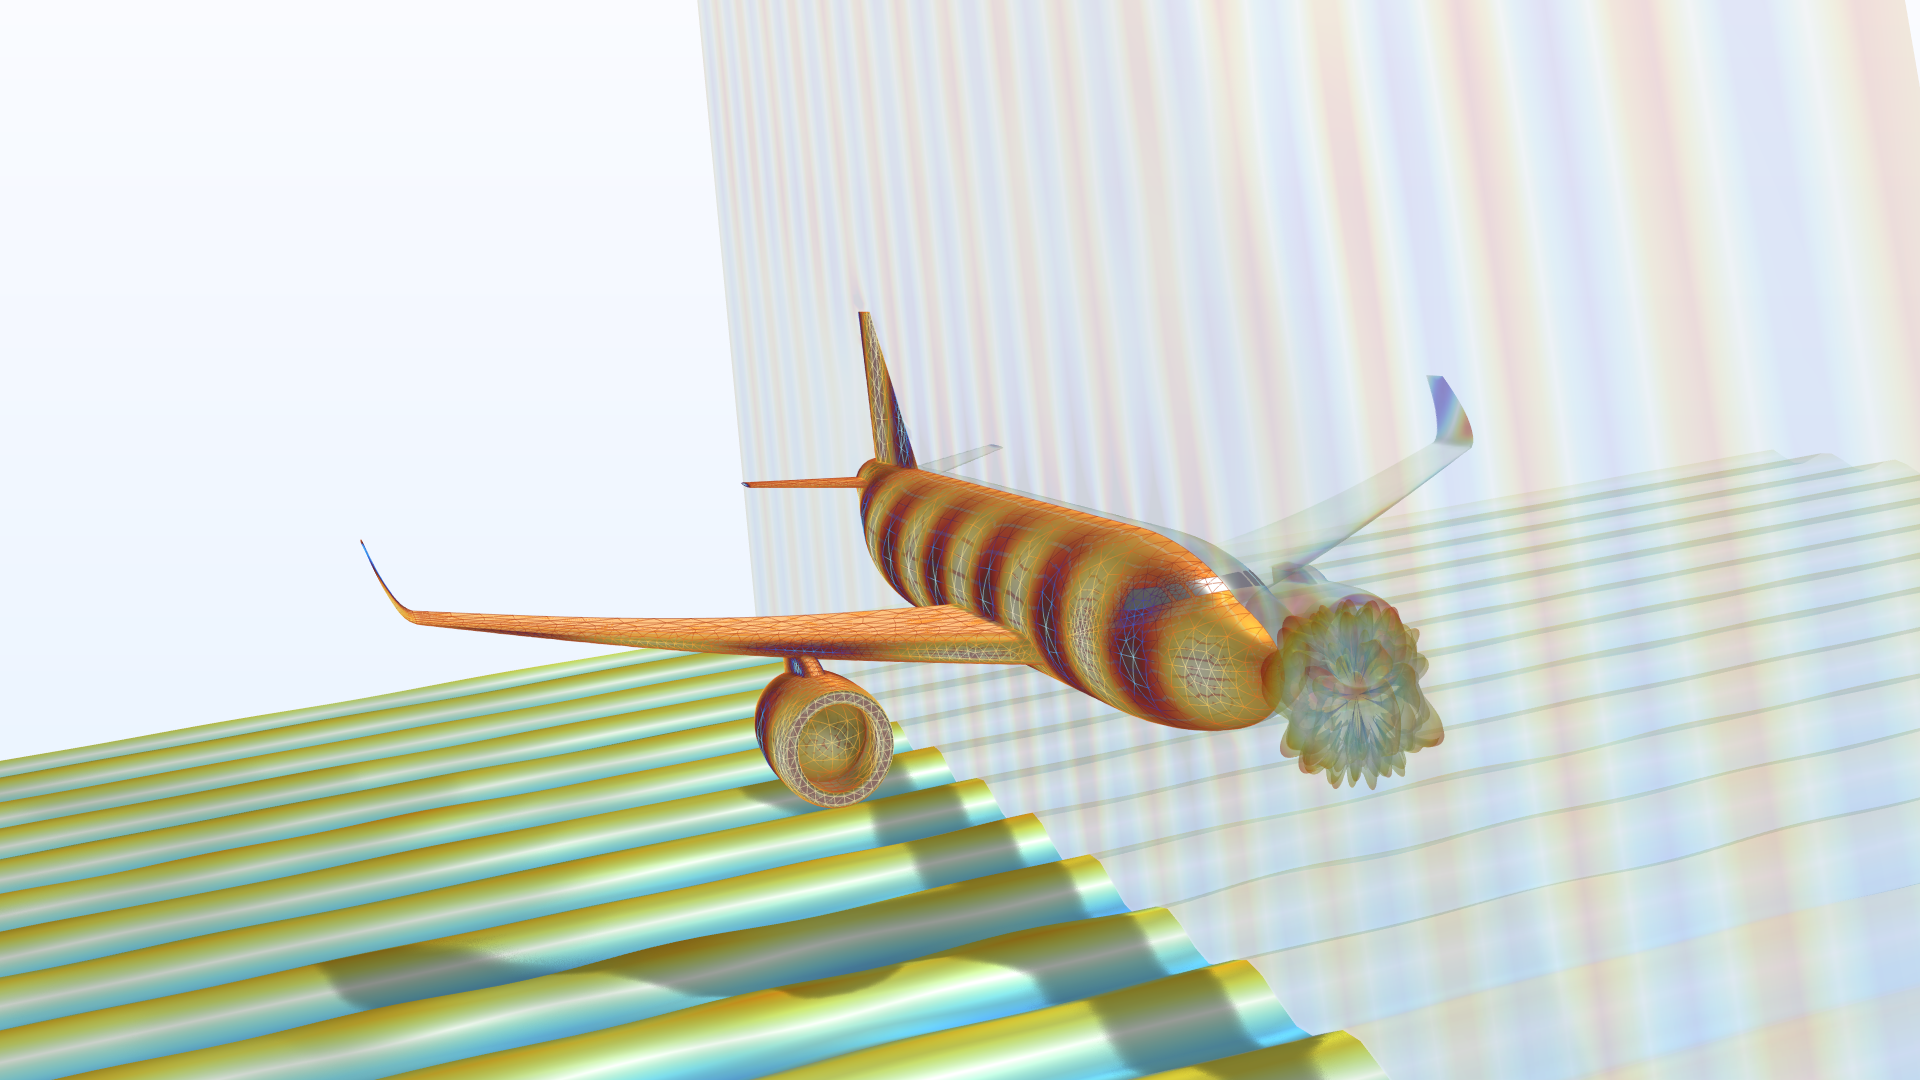 title="" alt="En modell av ett flygplan som visar radartvärsnittet i Thermal Wave-färgtabellen"